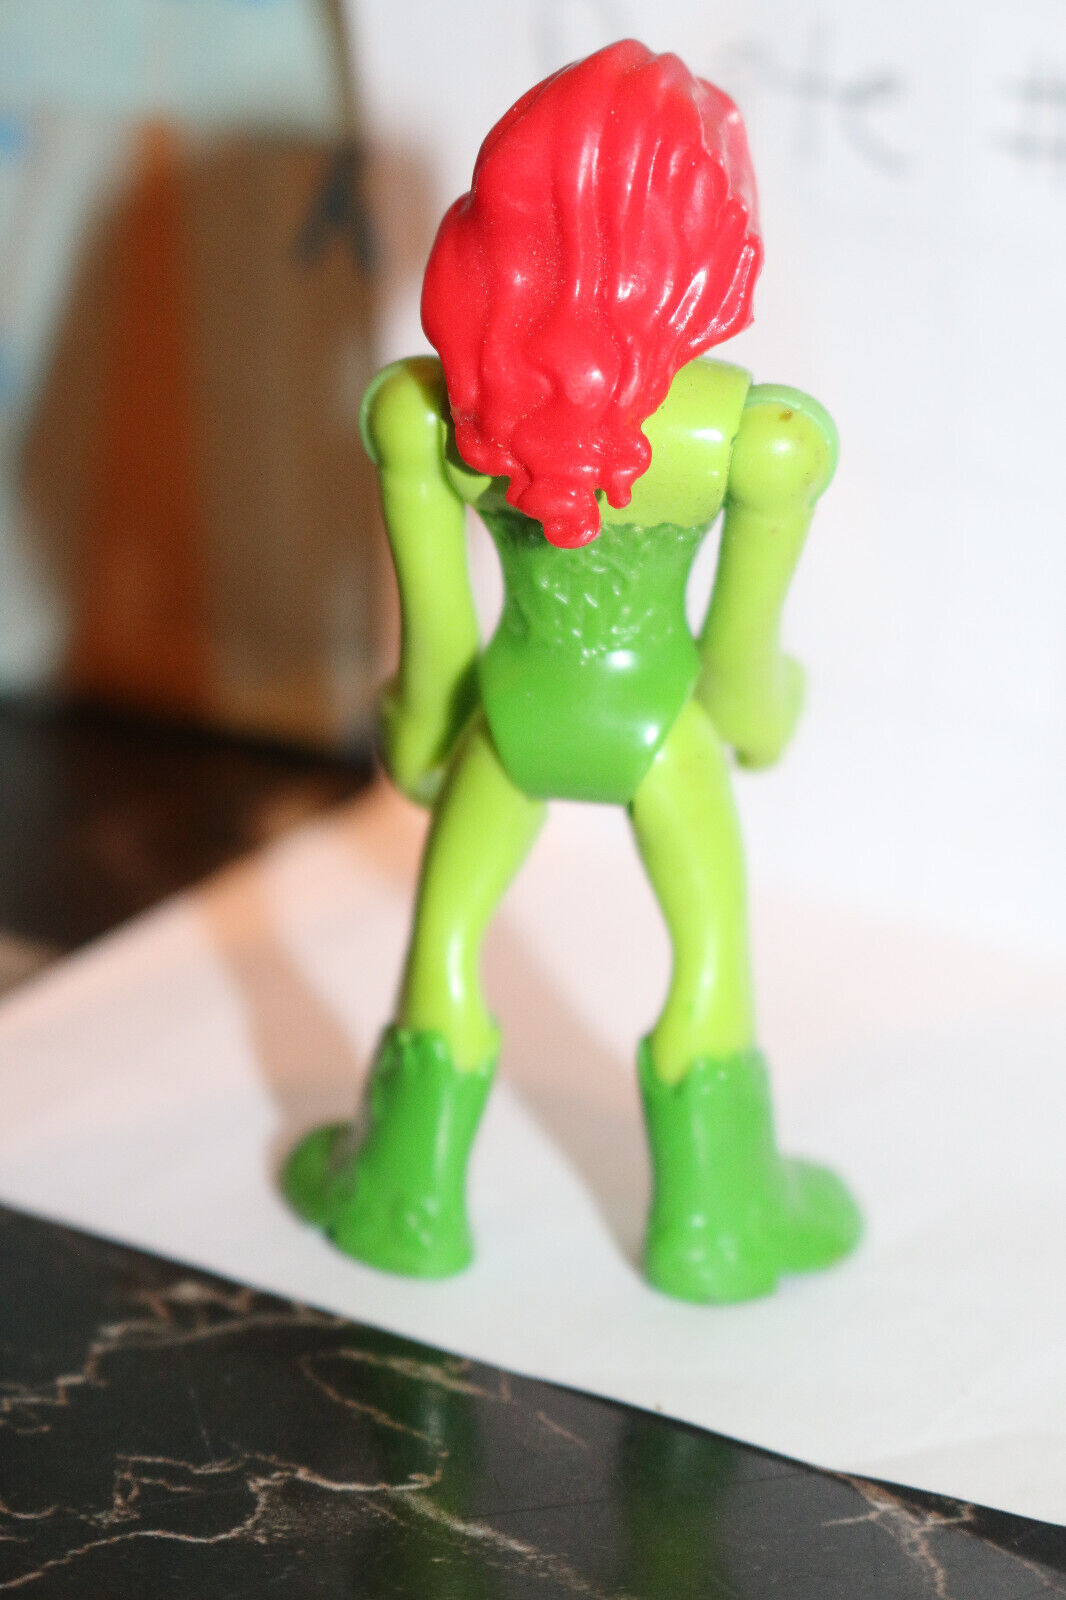 2.8" Imaginext Dc Super Friends Poison Ivy Action Figure Toy